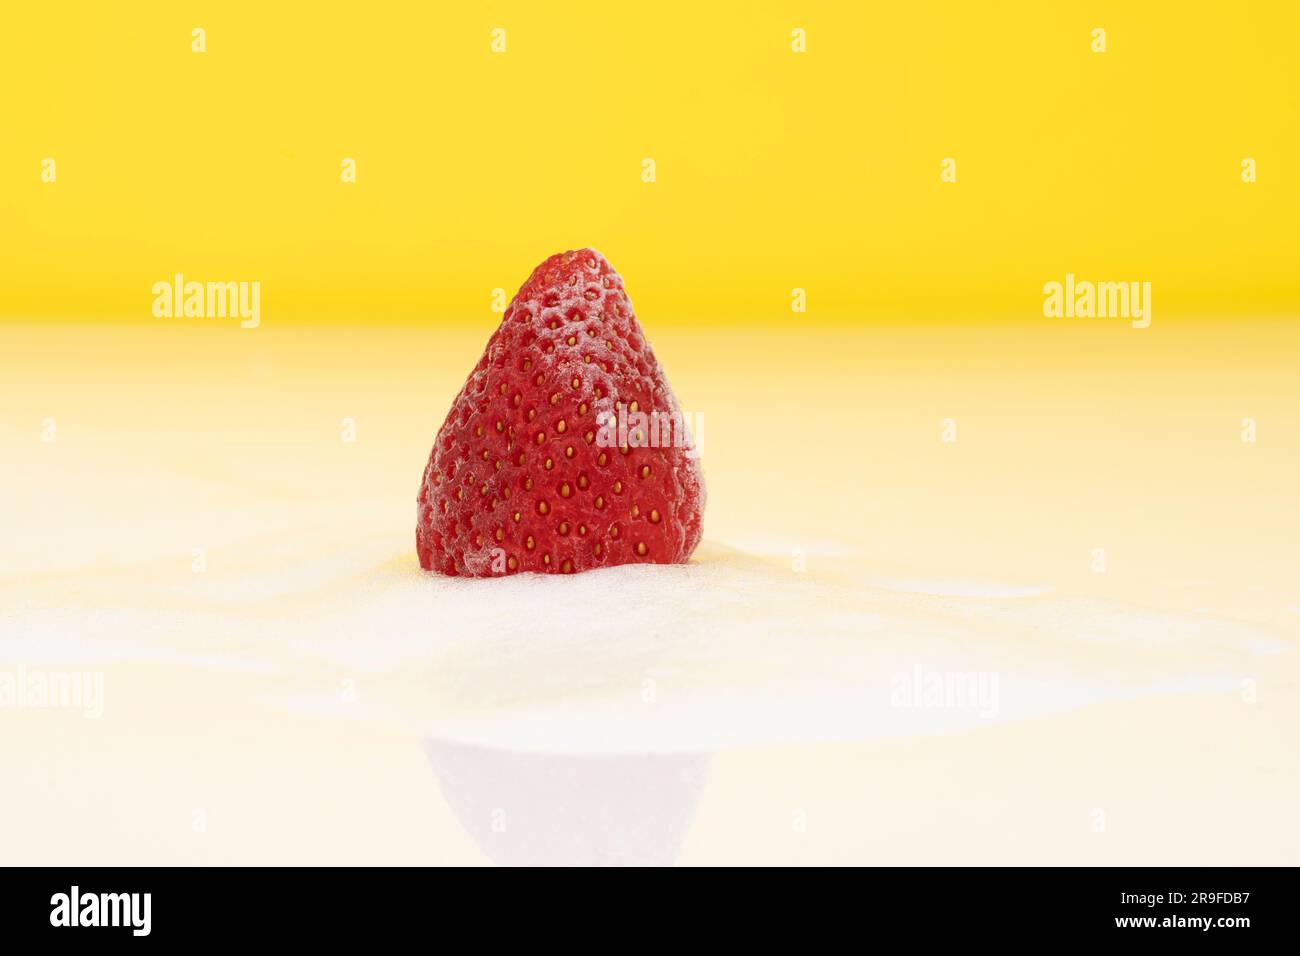 Eine frische Erdbeere auf einem Bett mit weißem Zucker auf gelbem Hintergrund Stockfoto